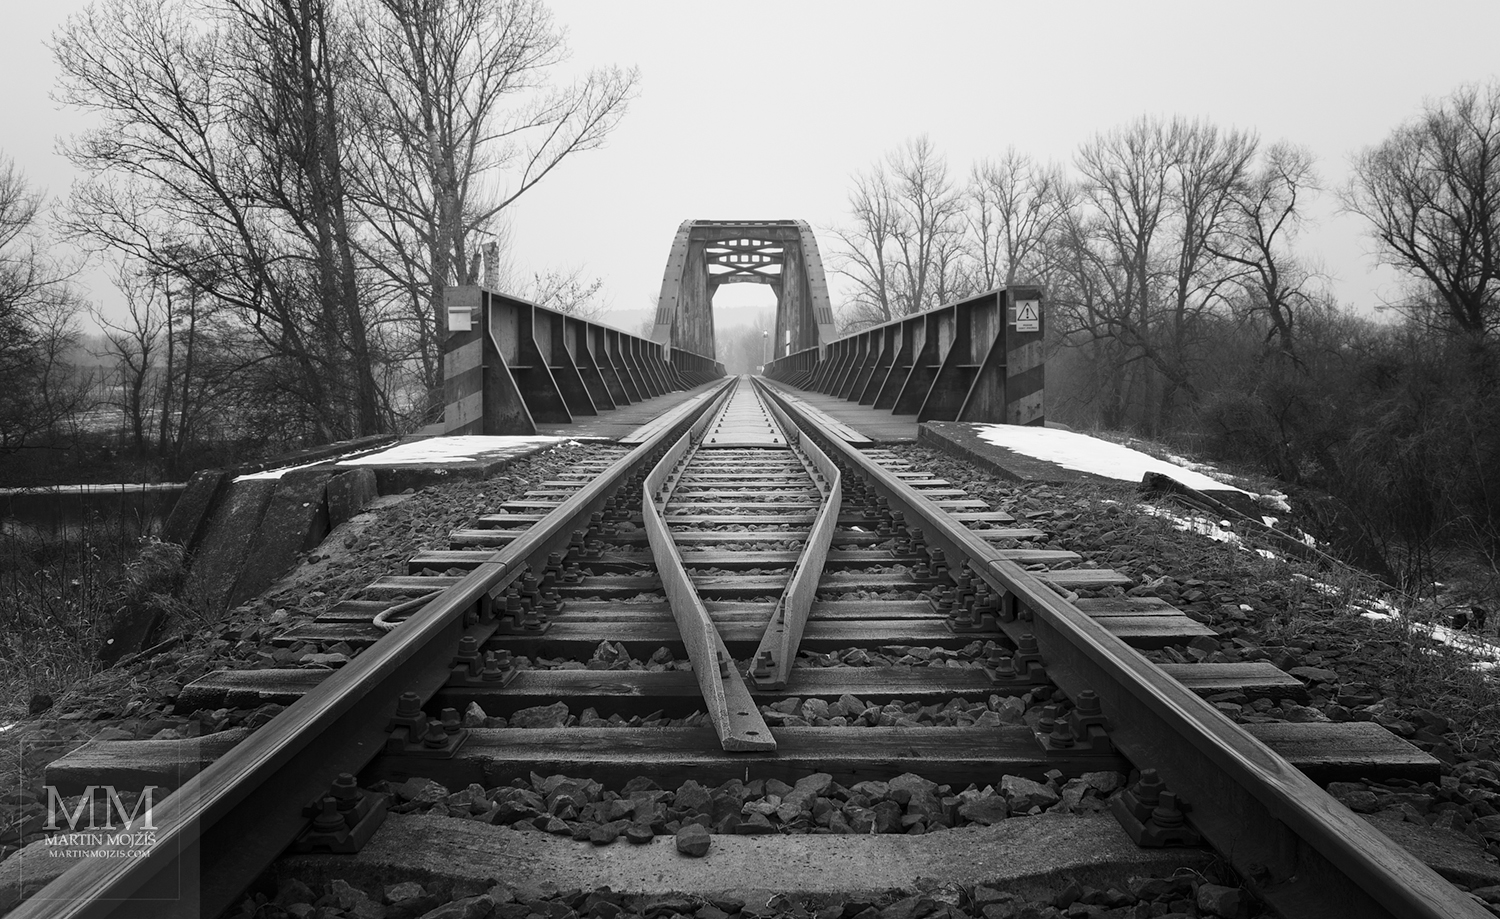 Pohled zblízka na přídržnice před začátkem mostu. Umělecká černobílá fotografie Martina Mojžíše s názvem PŘED MOSTEM.